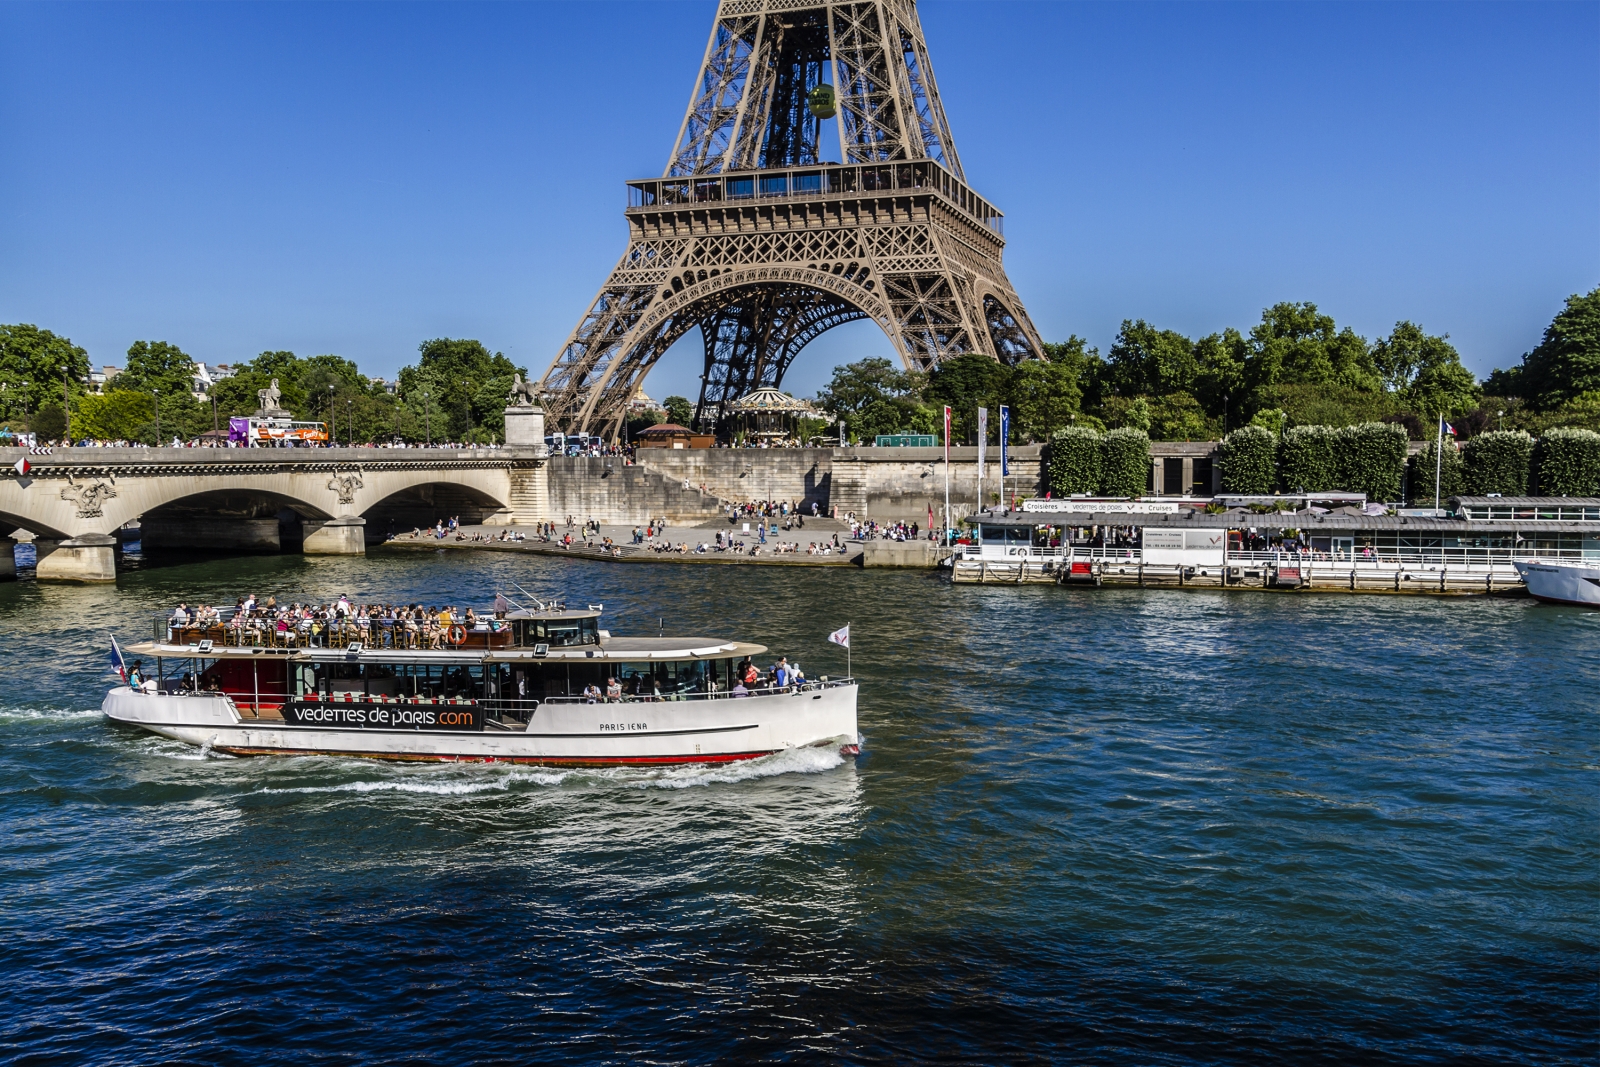 Речка сена. Река сена в Париже. Река сена во Франции. Достопримечательности Франции. Река сена. Сена (река) реки Франции.